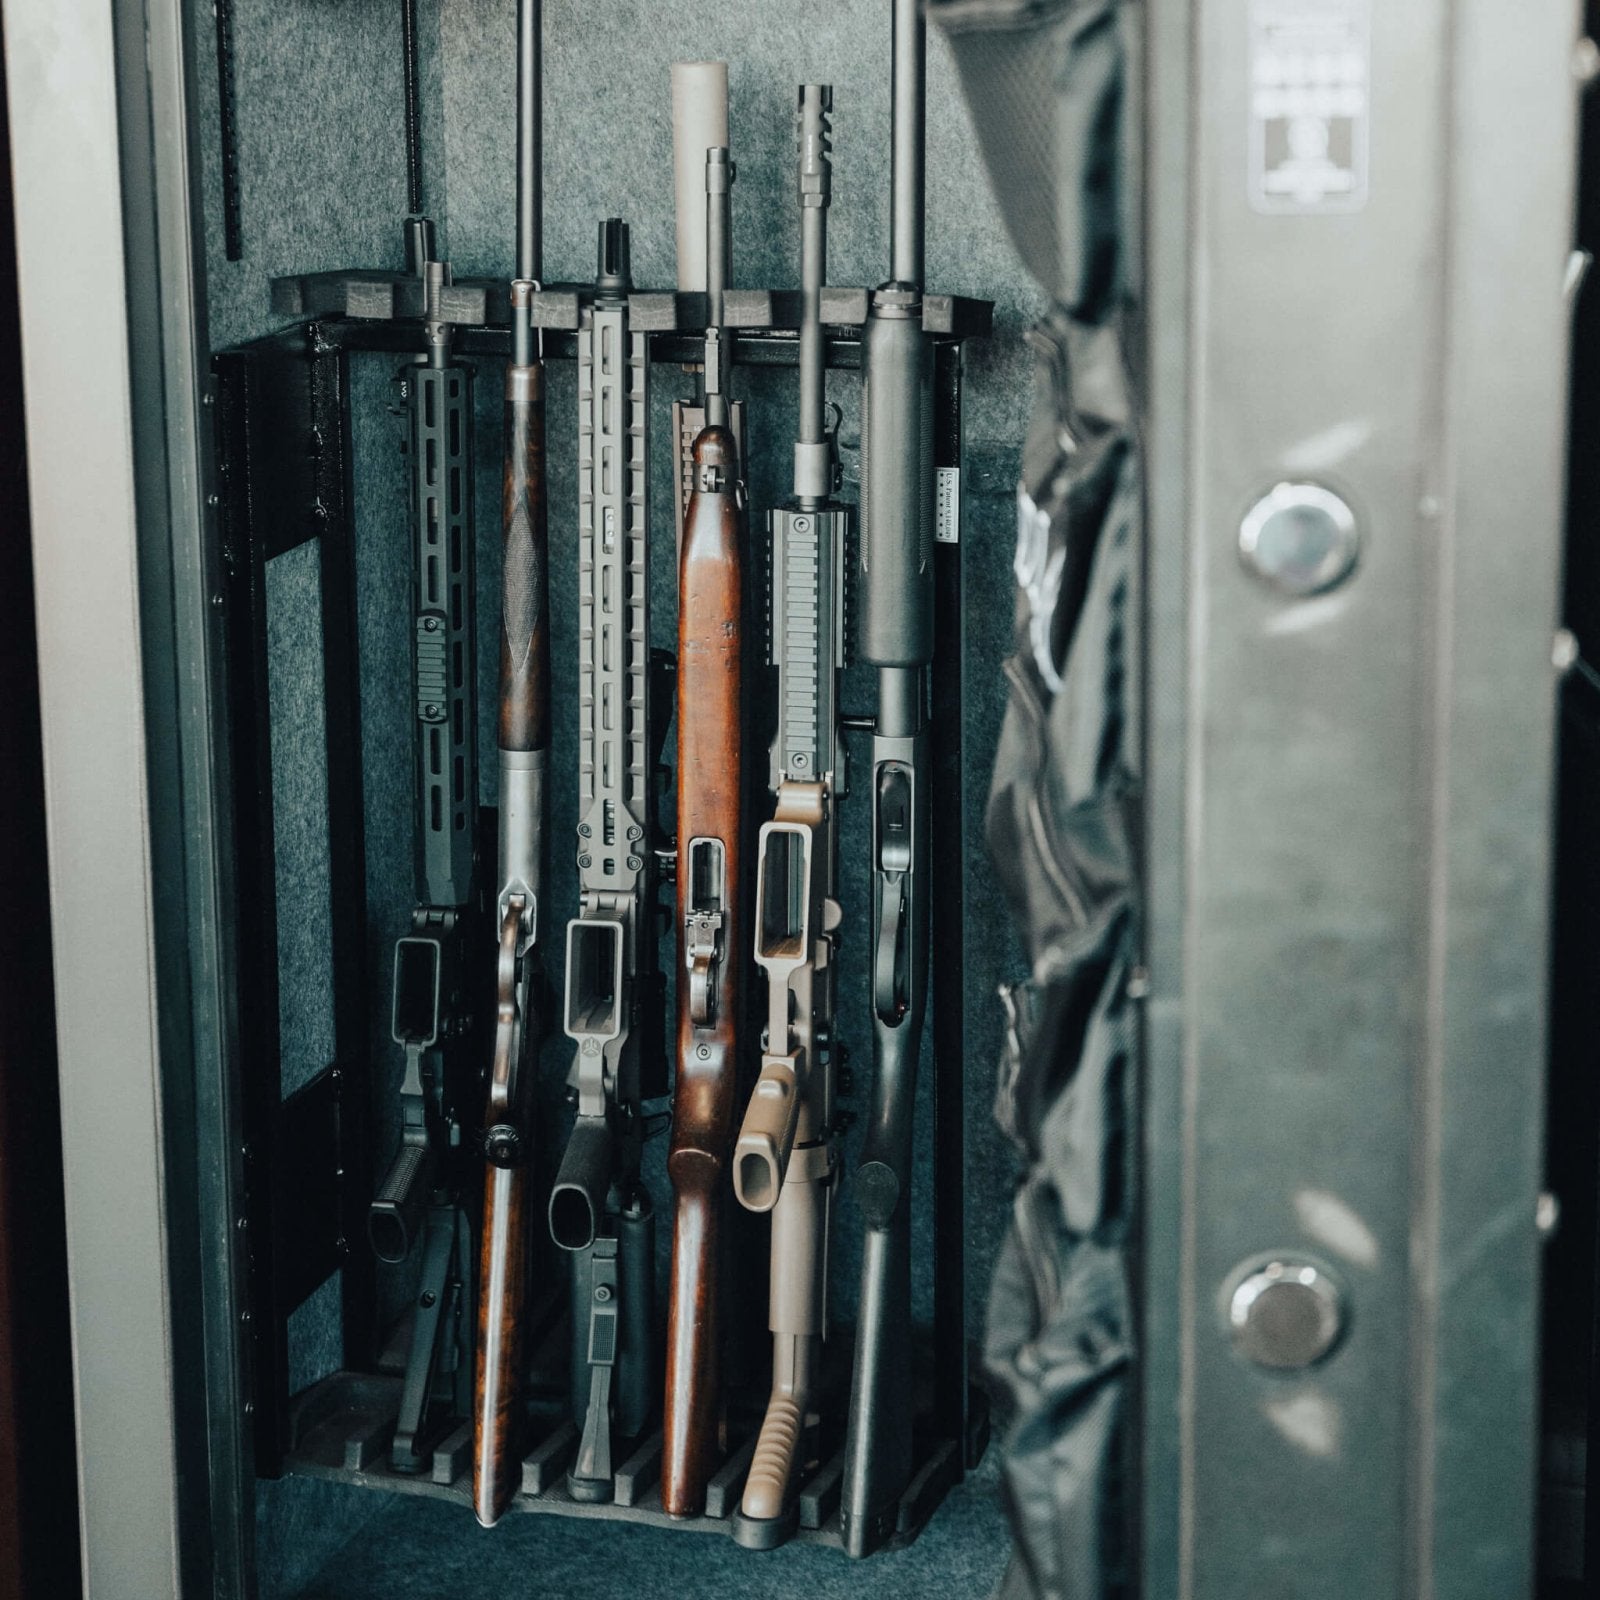  Kodiak Home Gun Safe for Rifles & Pistols